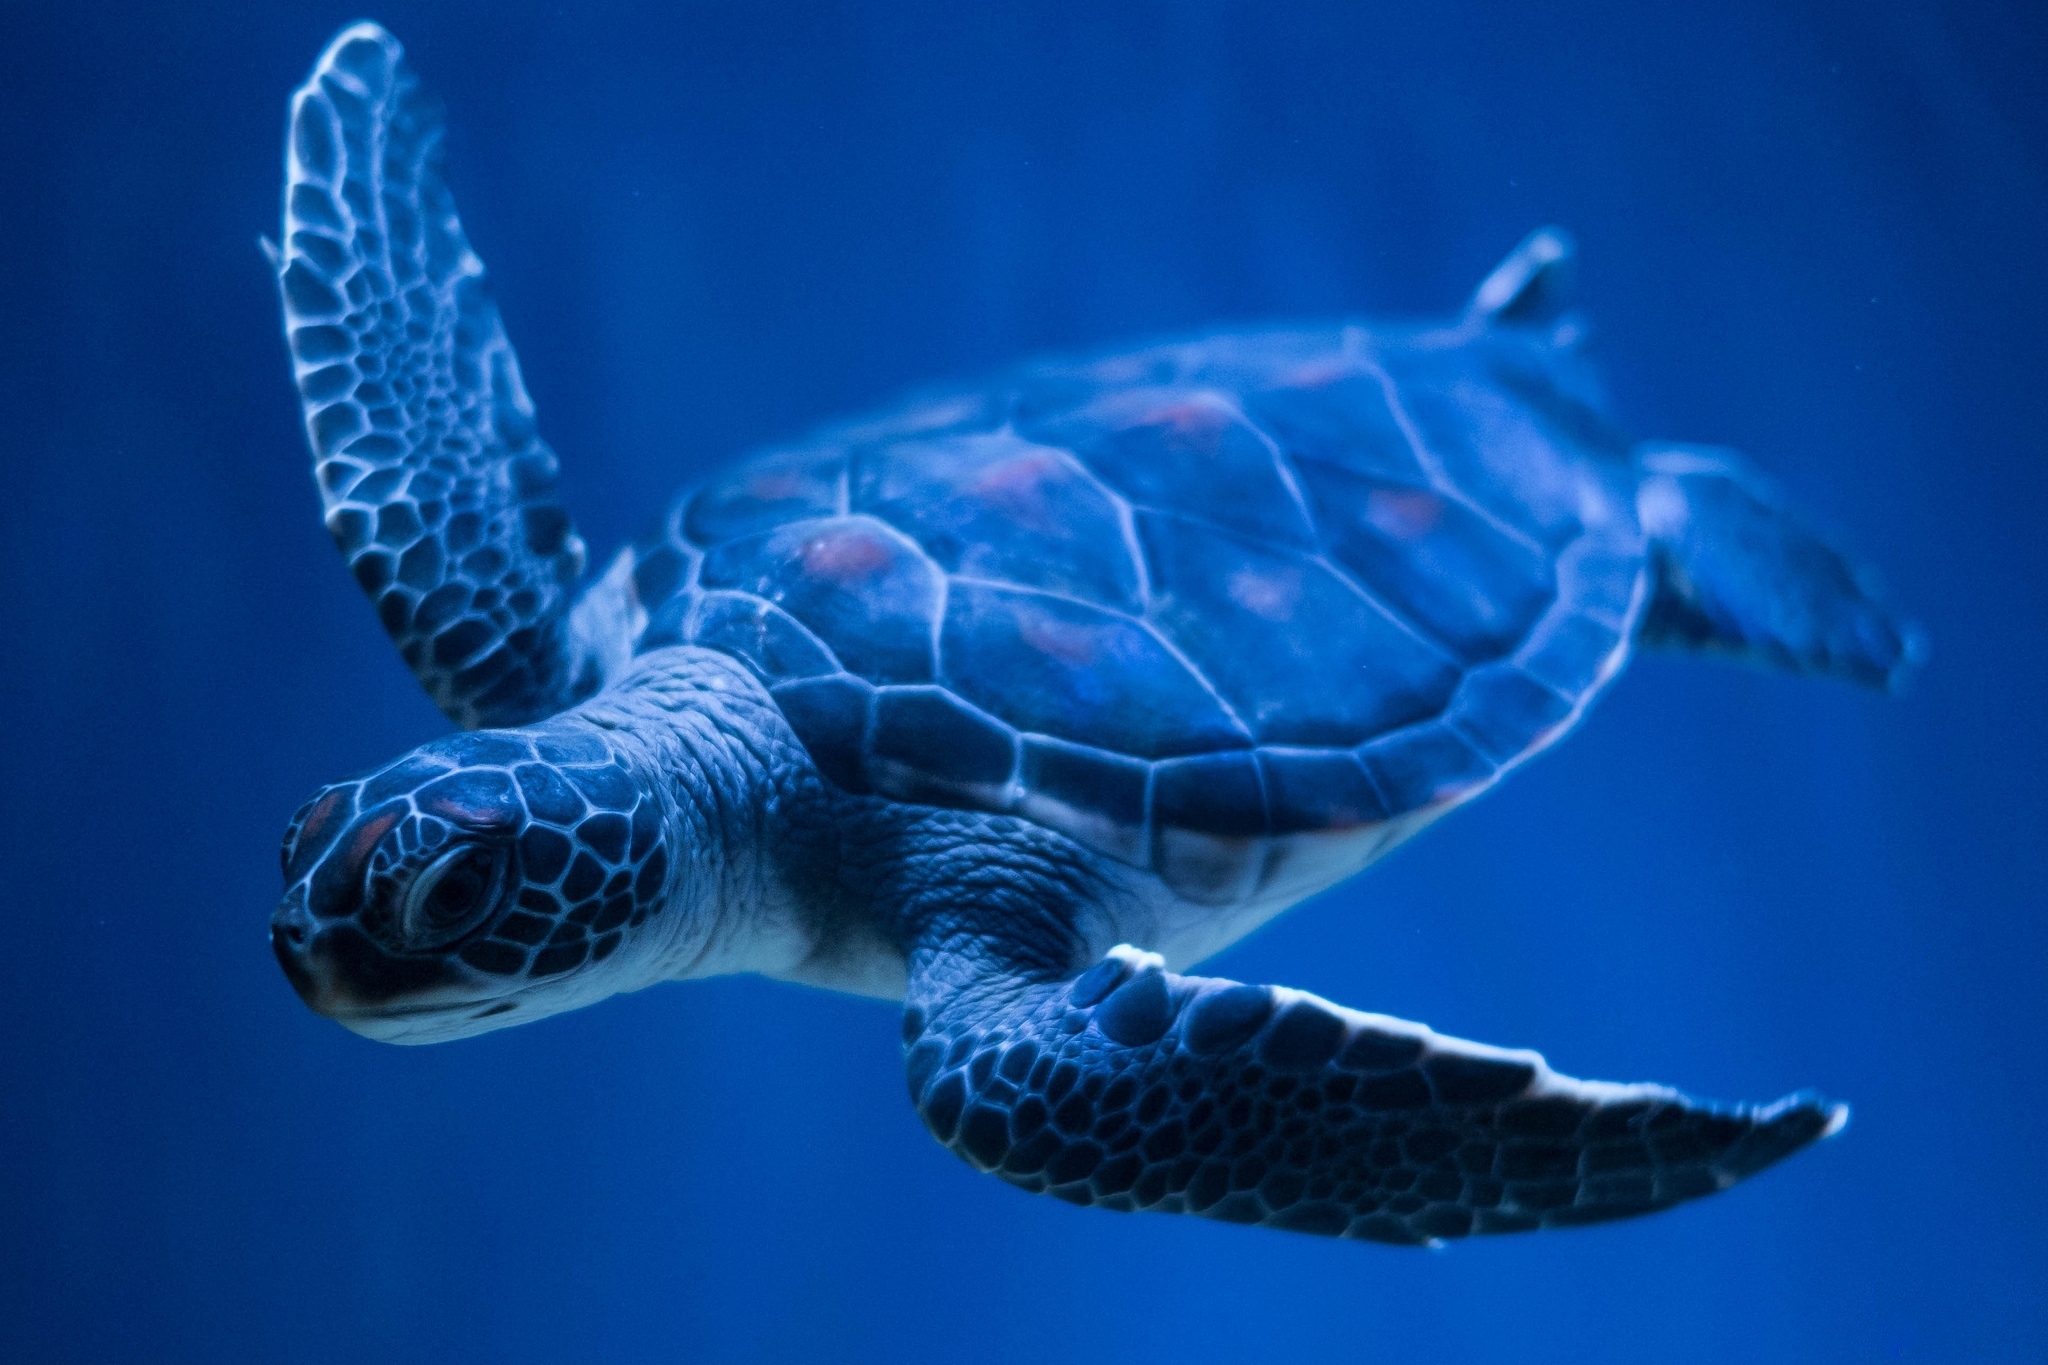 HD desktop wallpaper: Turtles, Animal, Turtle download free picture #284733